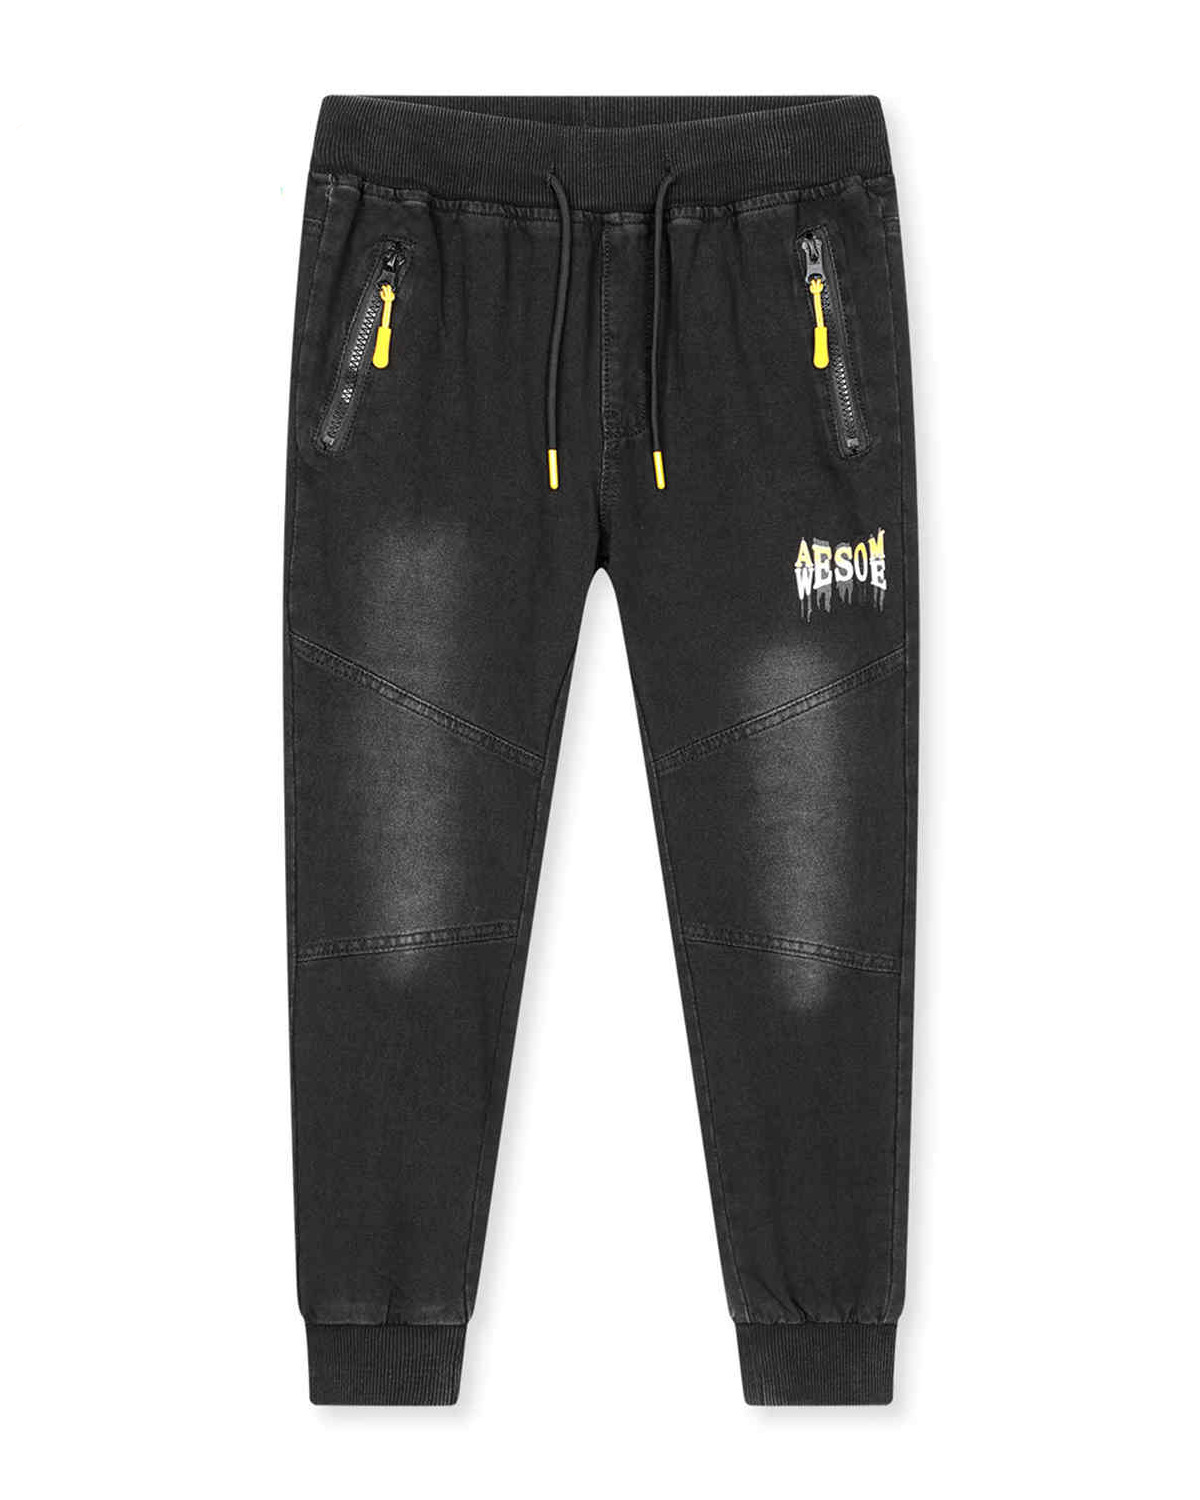 Chlapecké riflové kalhoty / tepláky - KUGO CK0928, černá / žlutá aplikace Barva: Černá, Velikost: 134